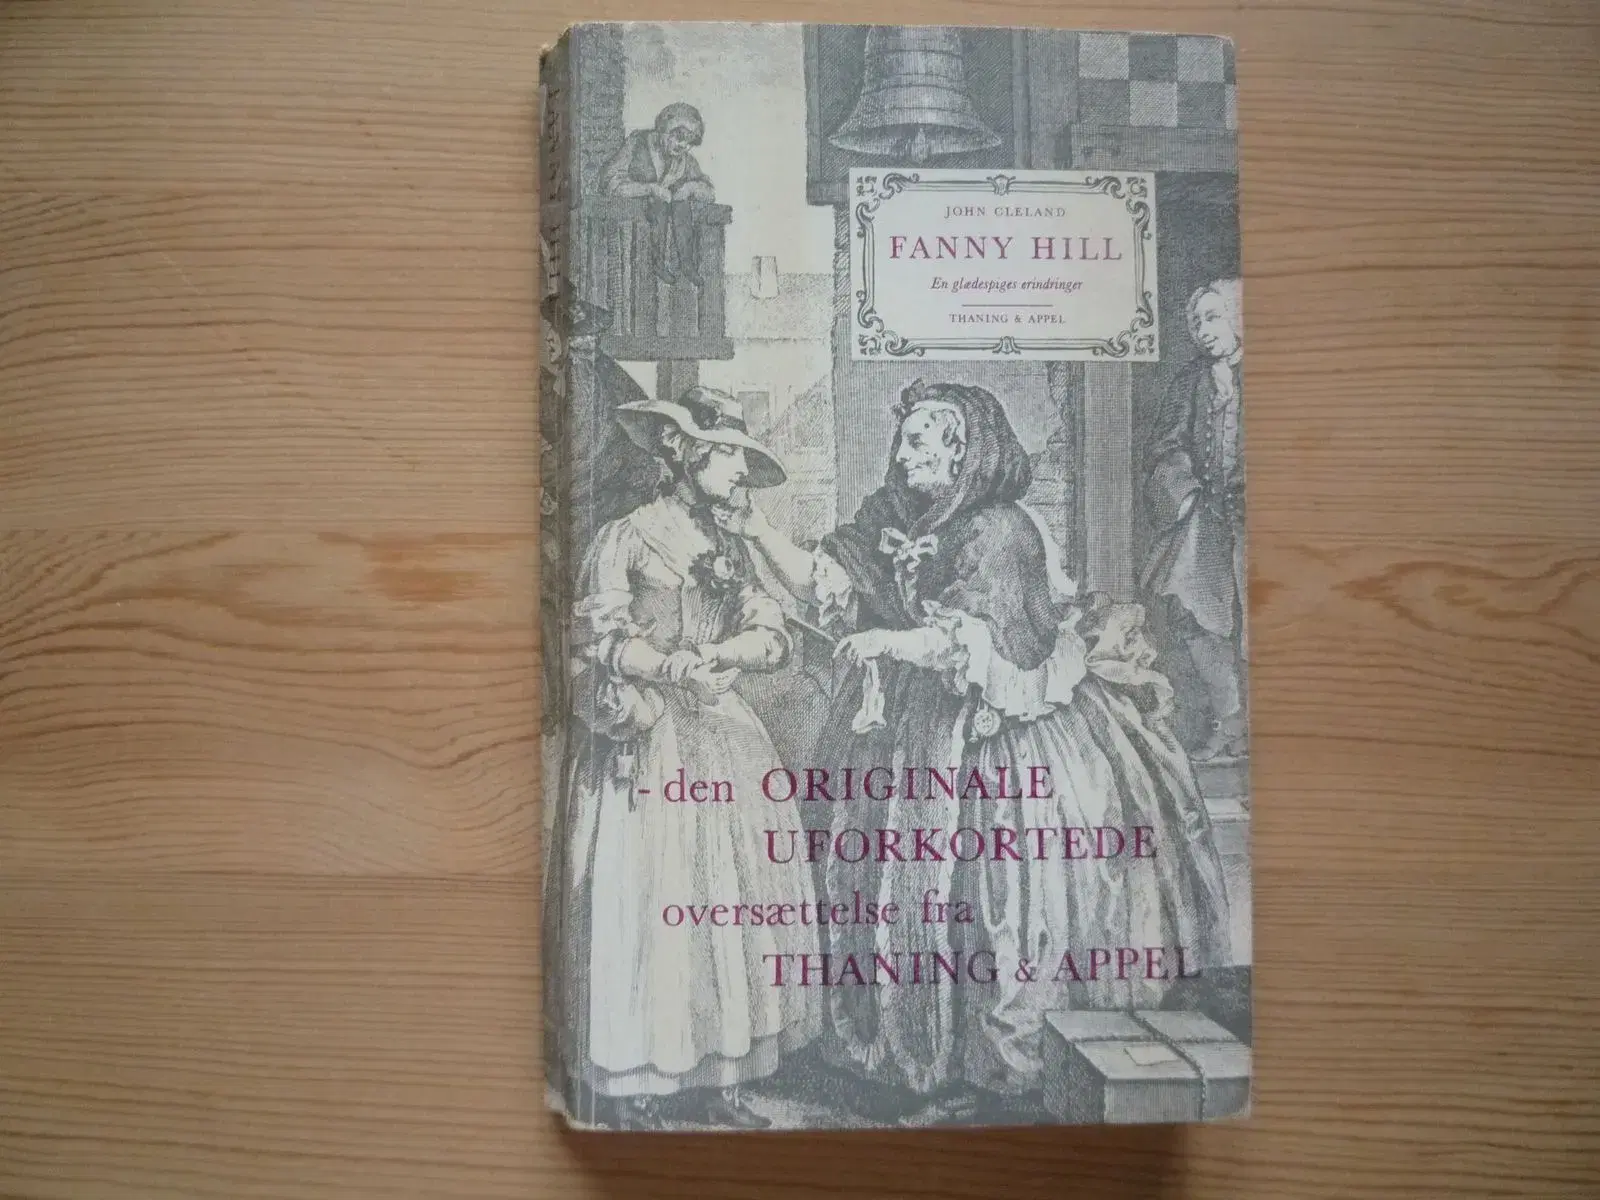 John Cleland Fanny Hill